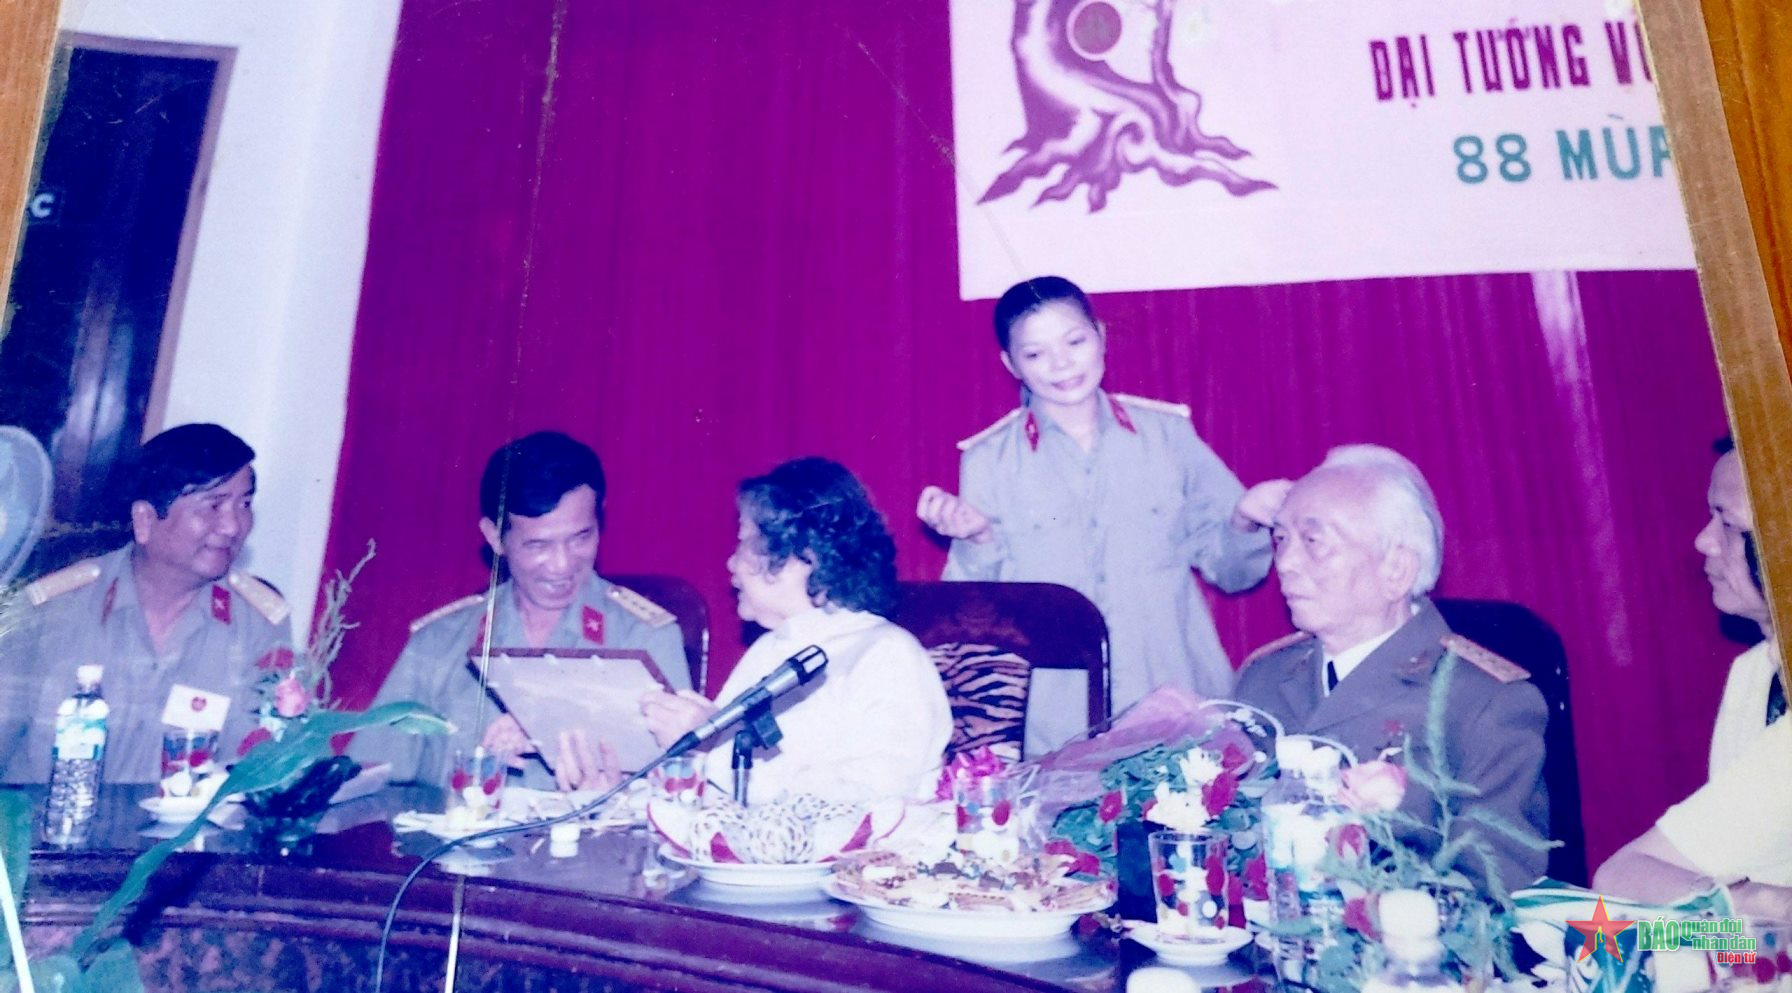 Nghệ sĩ Việt chúc mừng sinh nhật Đại tướng Võ Nguyên Giáp  Trang thông tin  điện tử wwwhovuvovietnamcom